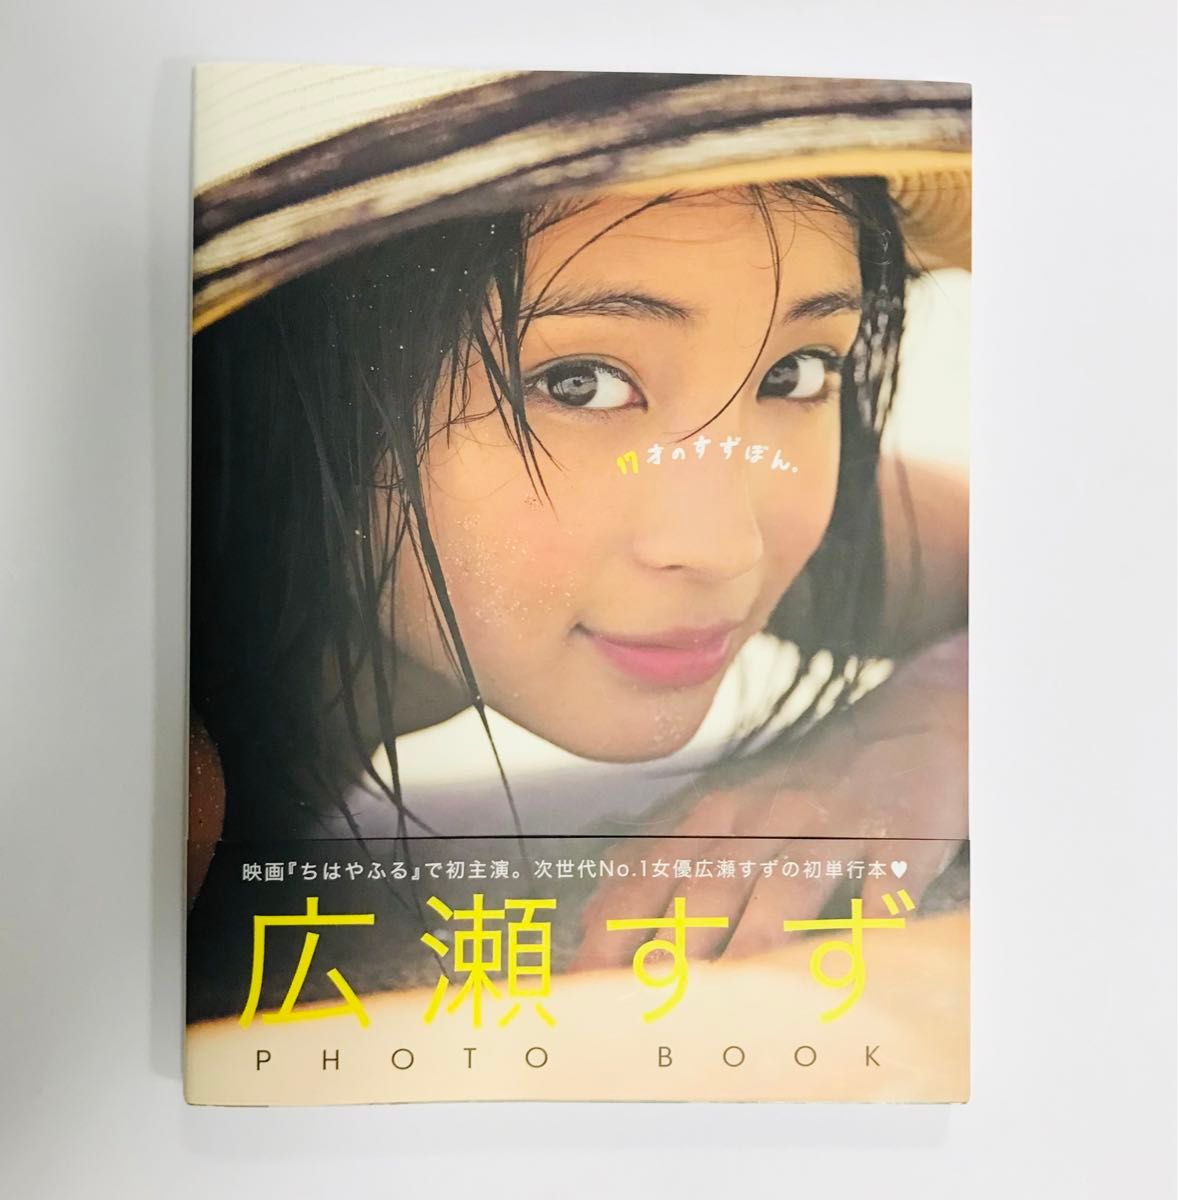 広瀬すずPHOTO BOOK 『17才のすずぼん。』 